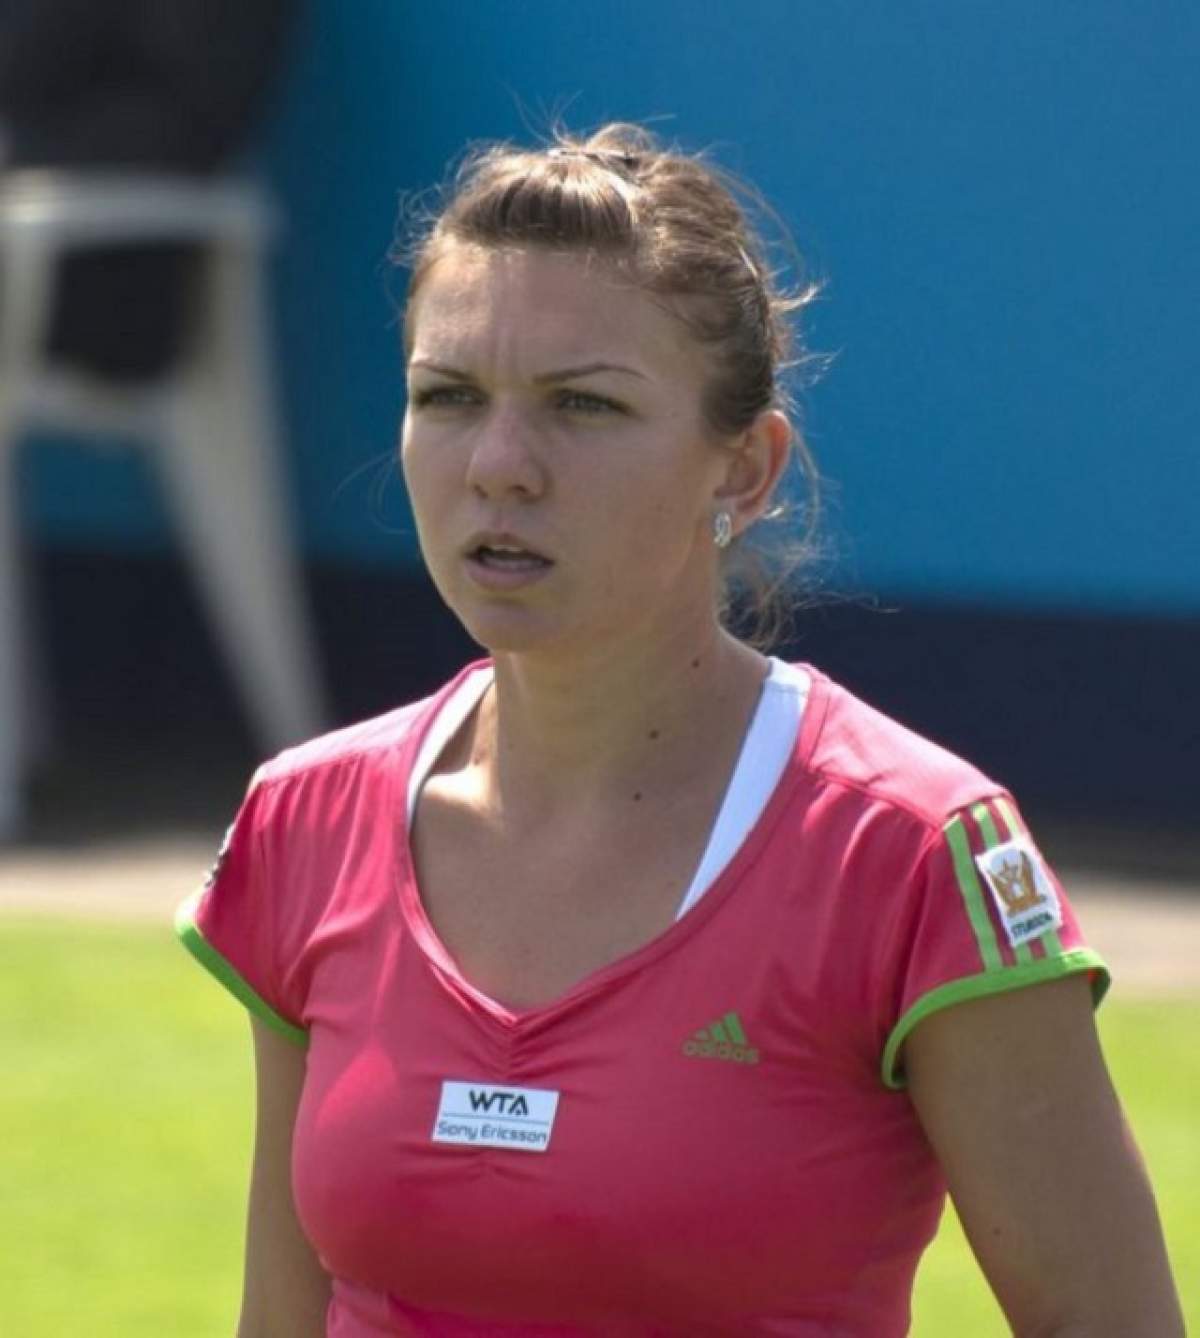 Toţi o vedeau ca şi ajunsă în finala de la Sydney, dar nu a reuşit. Simona Halep, învinsă de Svetlana Kuznetsova, scor 6-7, 6-4, 3-6